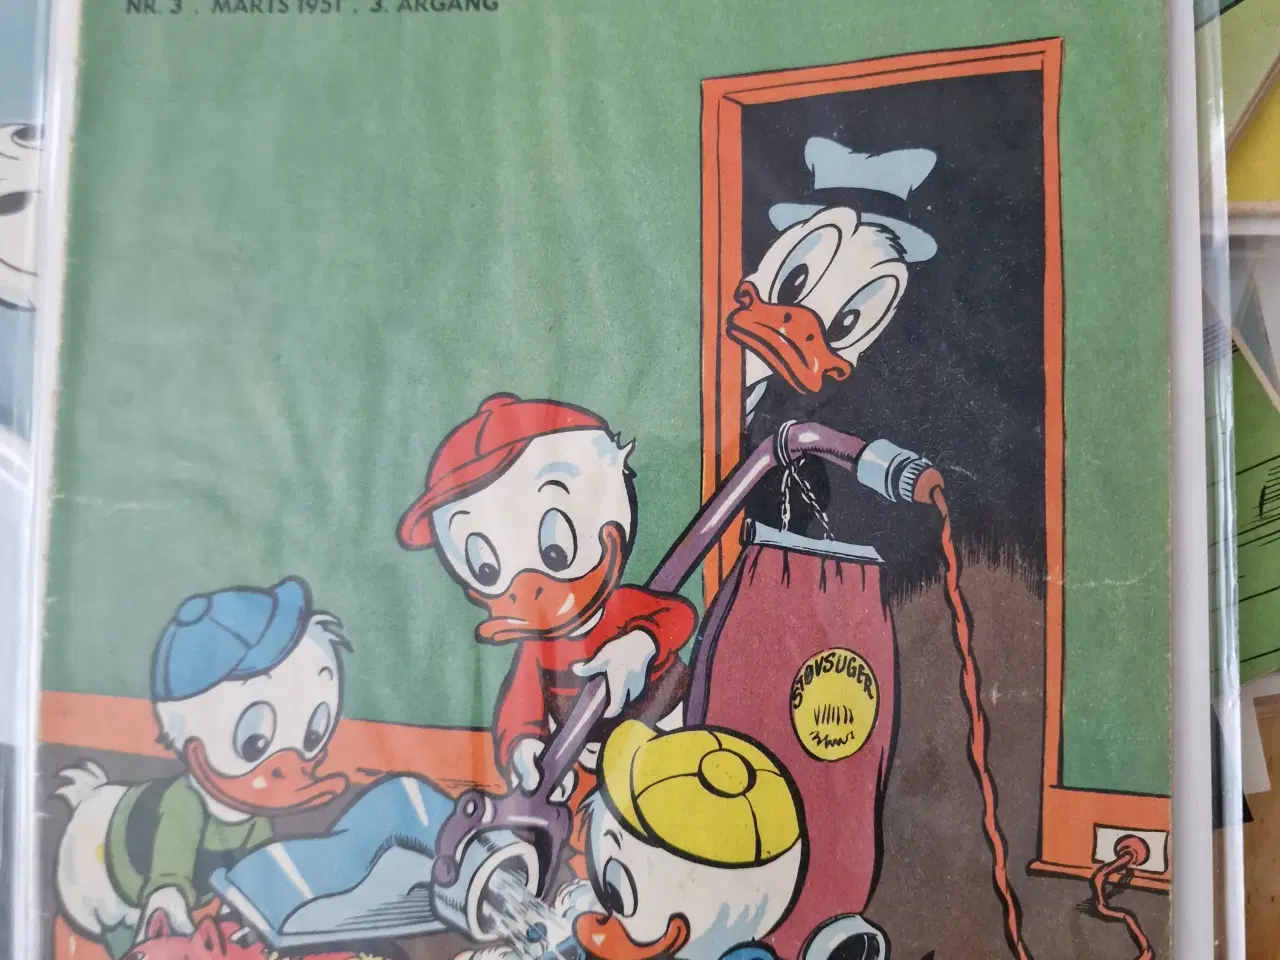 Billede 1 - Anders and blad 1951. Nr 3